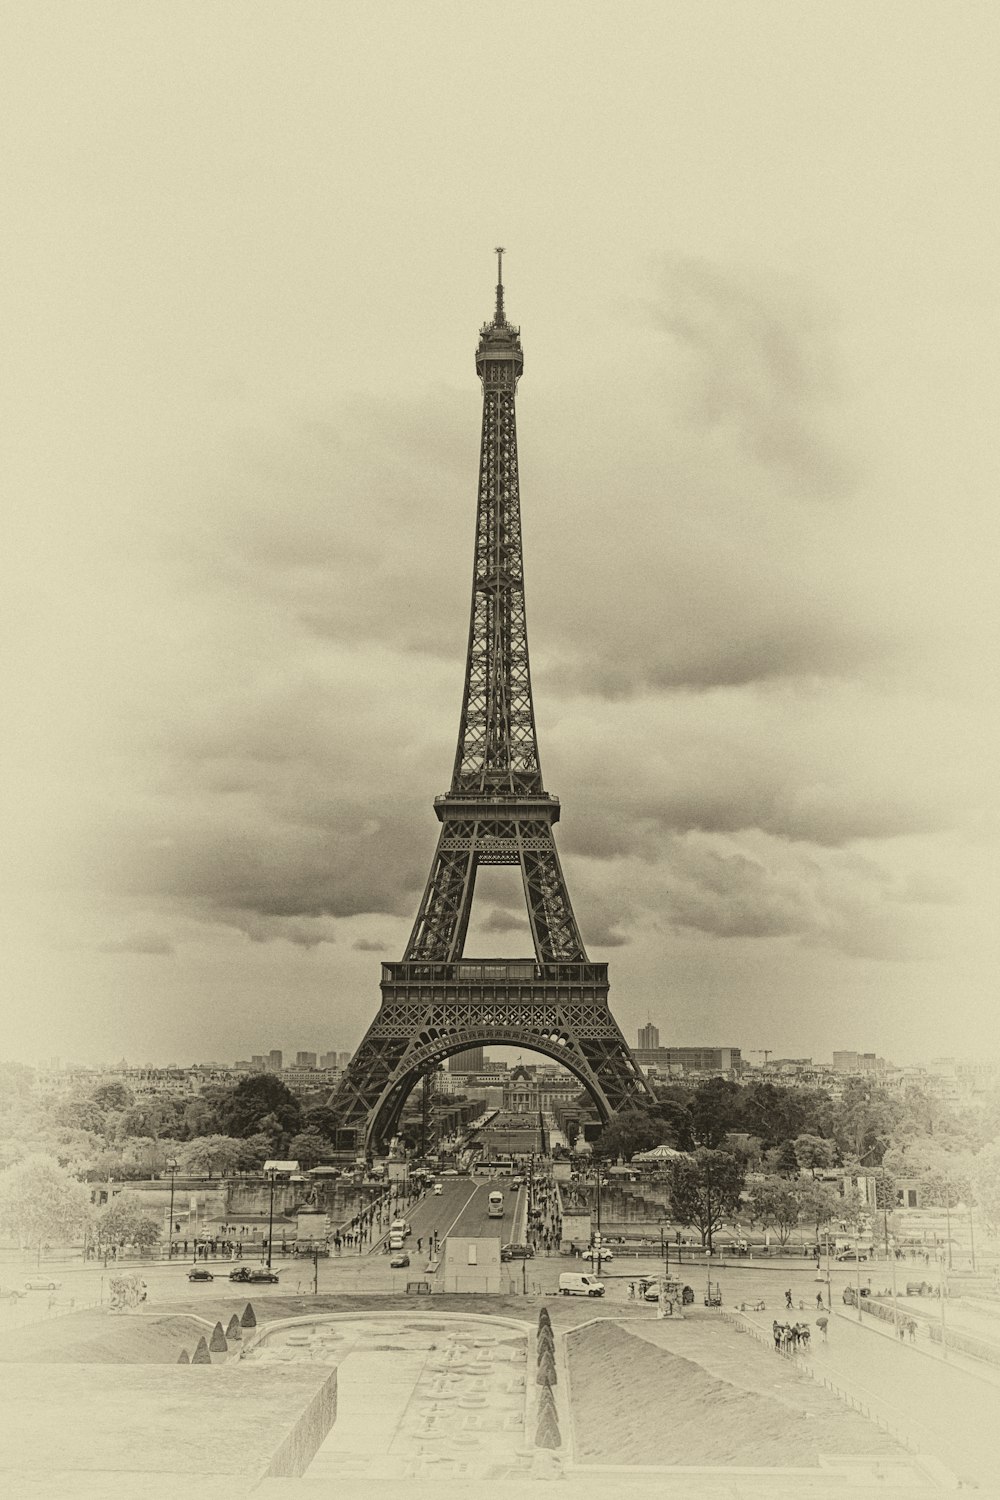 estrada movimentada mostrando a Torre Eiffel, Paris França